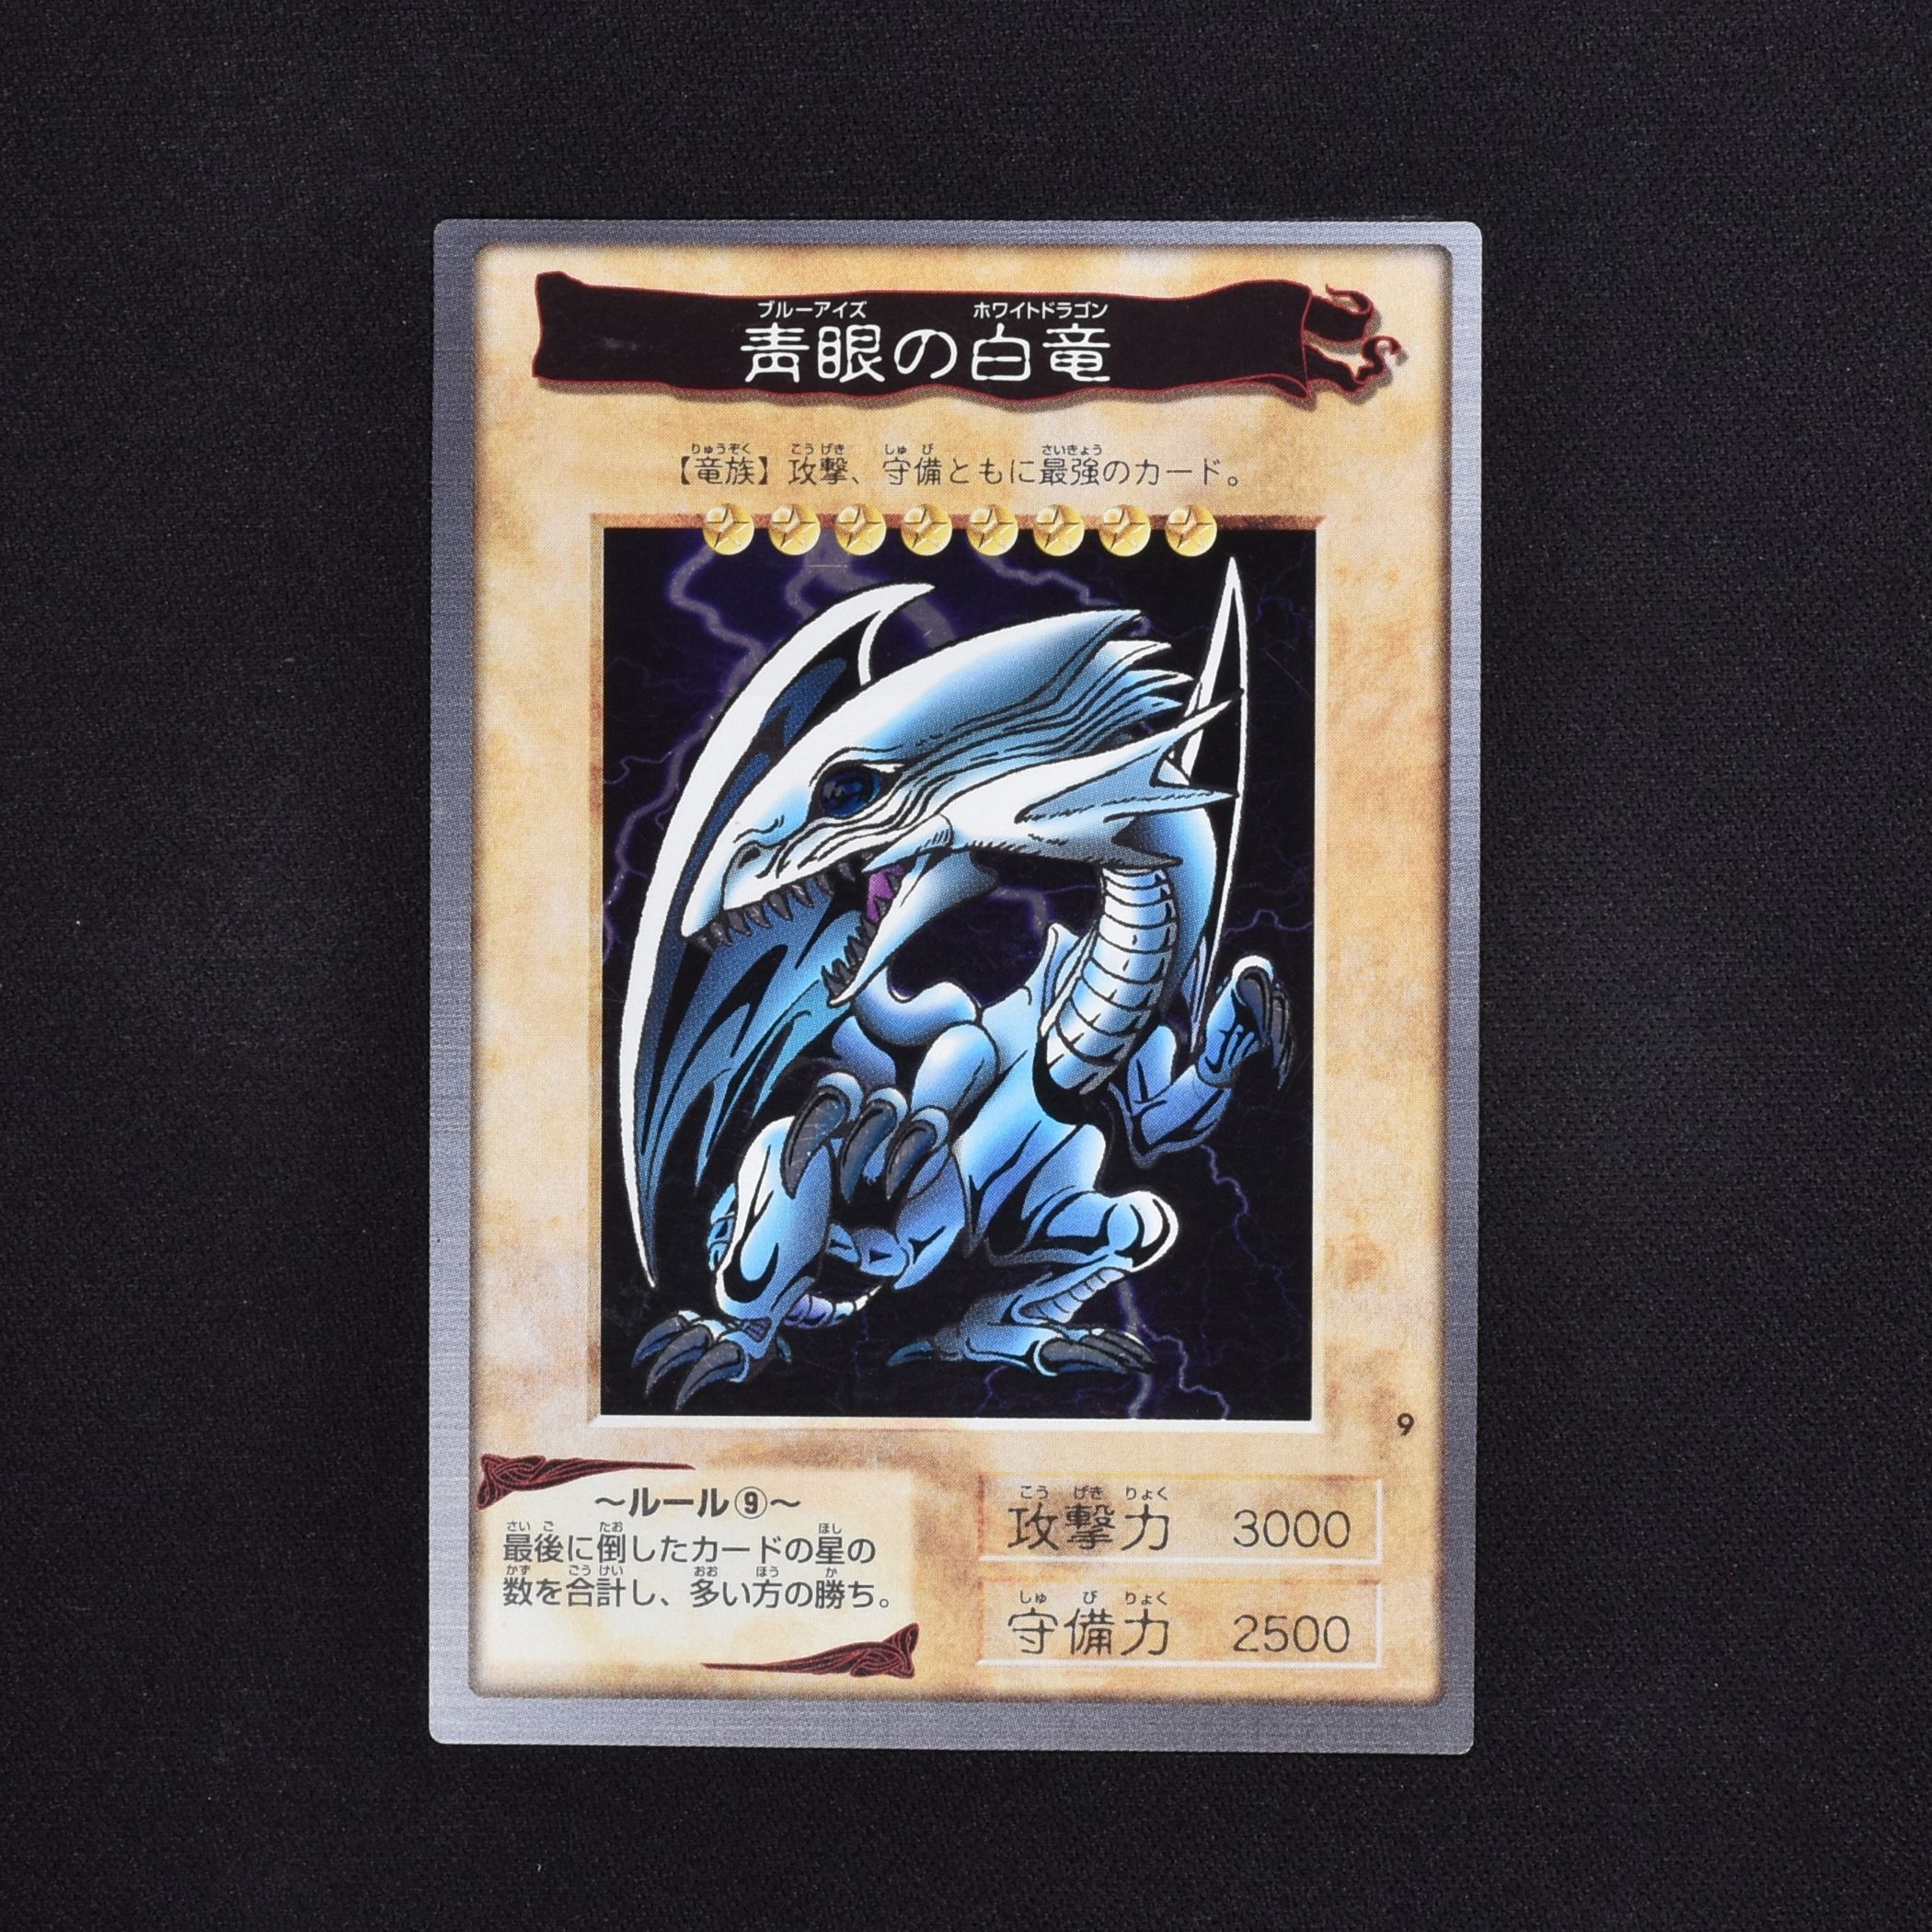 遊戯王 カード バンダイ版 青眼白竜 ブルーアイズホワイトドラゴン